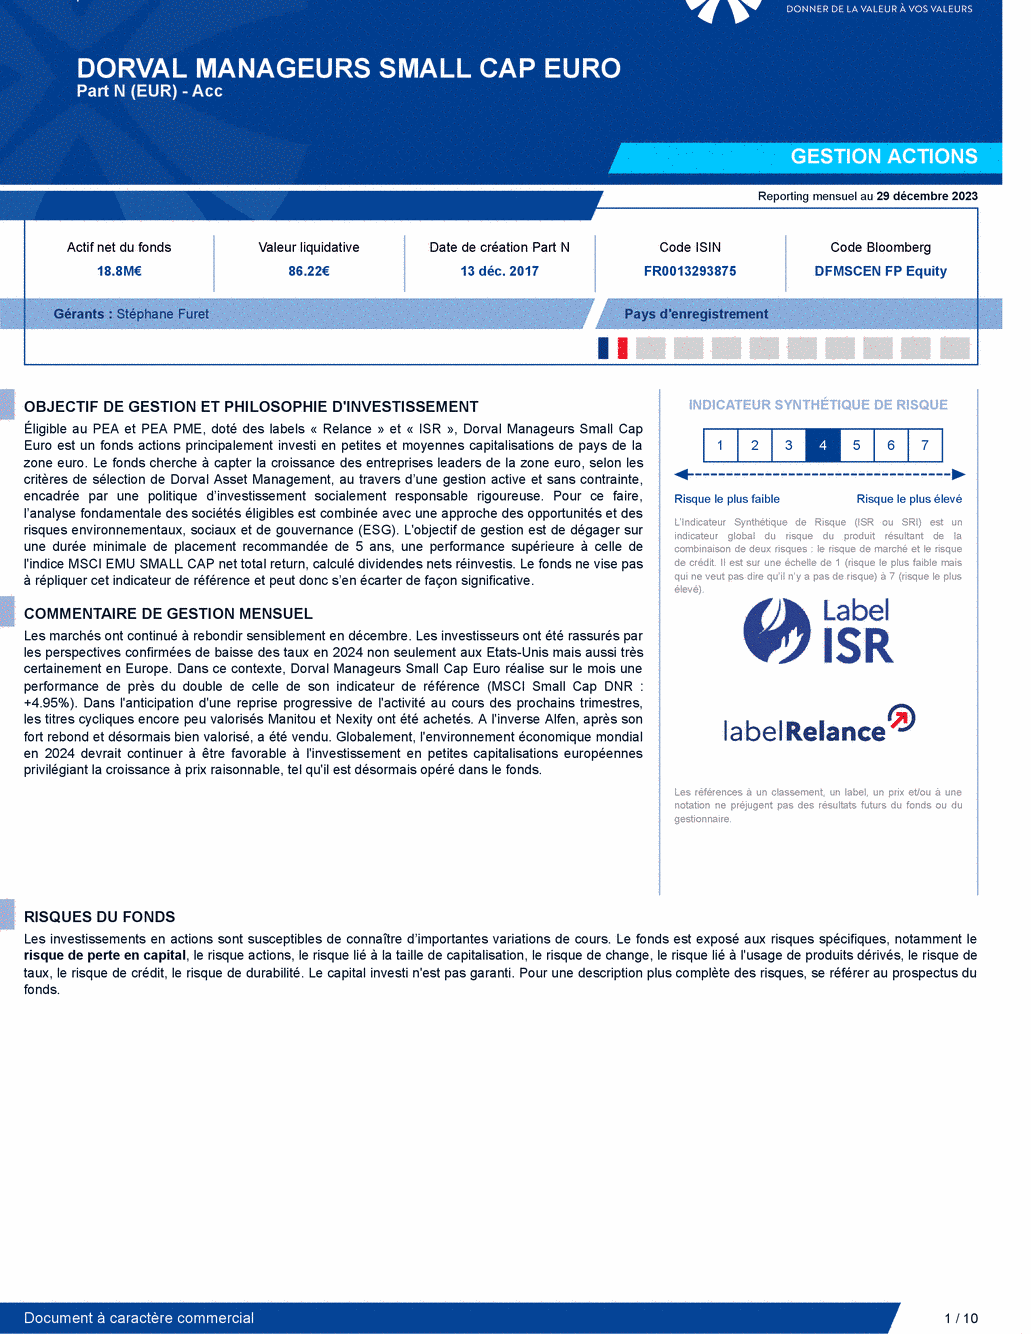 Reporting DORVAL MANAGEURS SMALL CAP EURO N - 29/12/2023 - Français